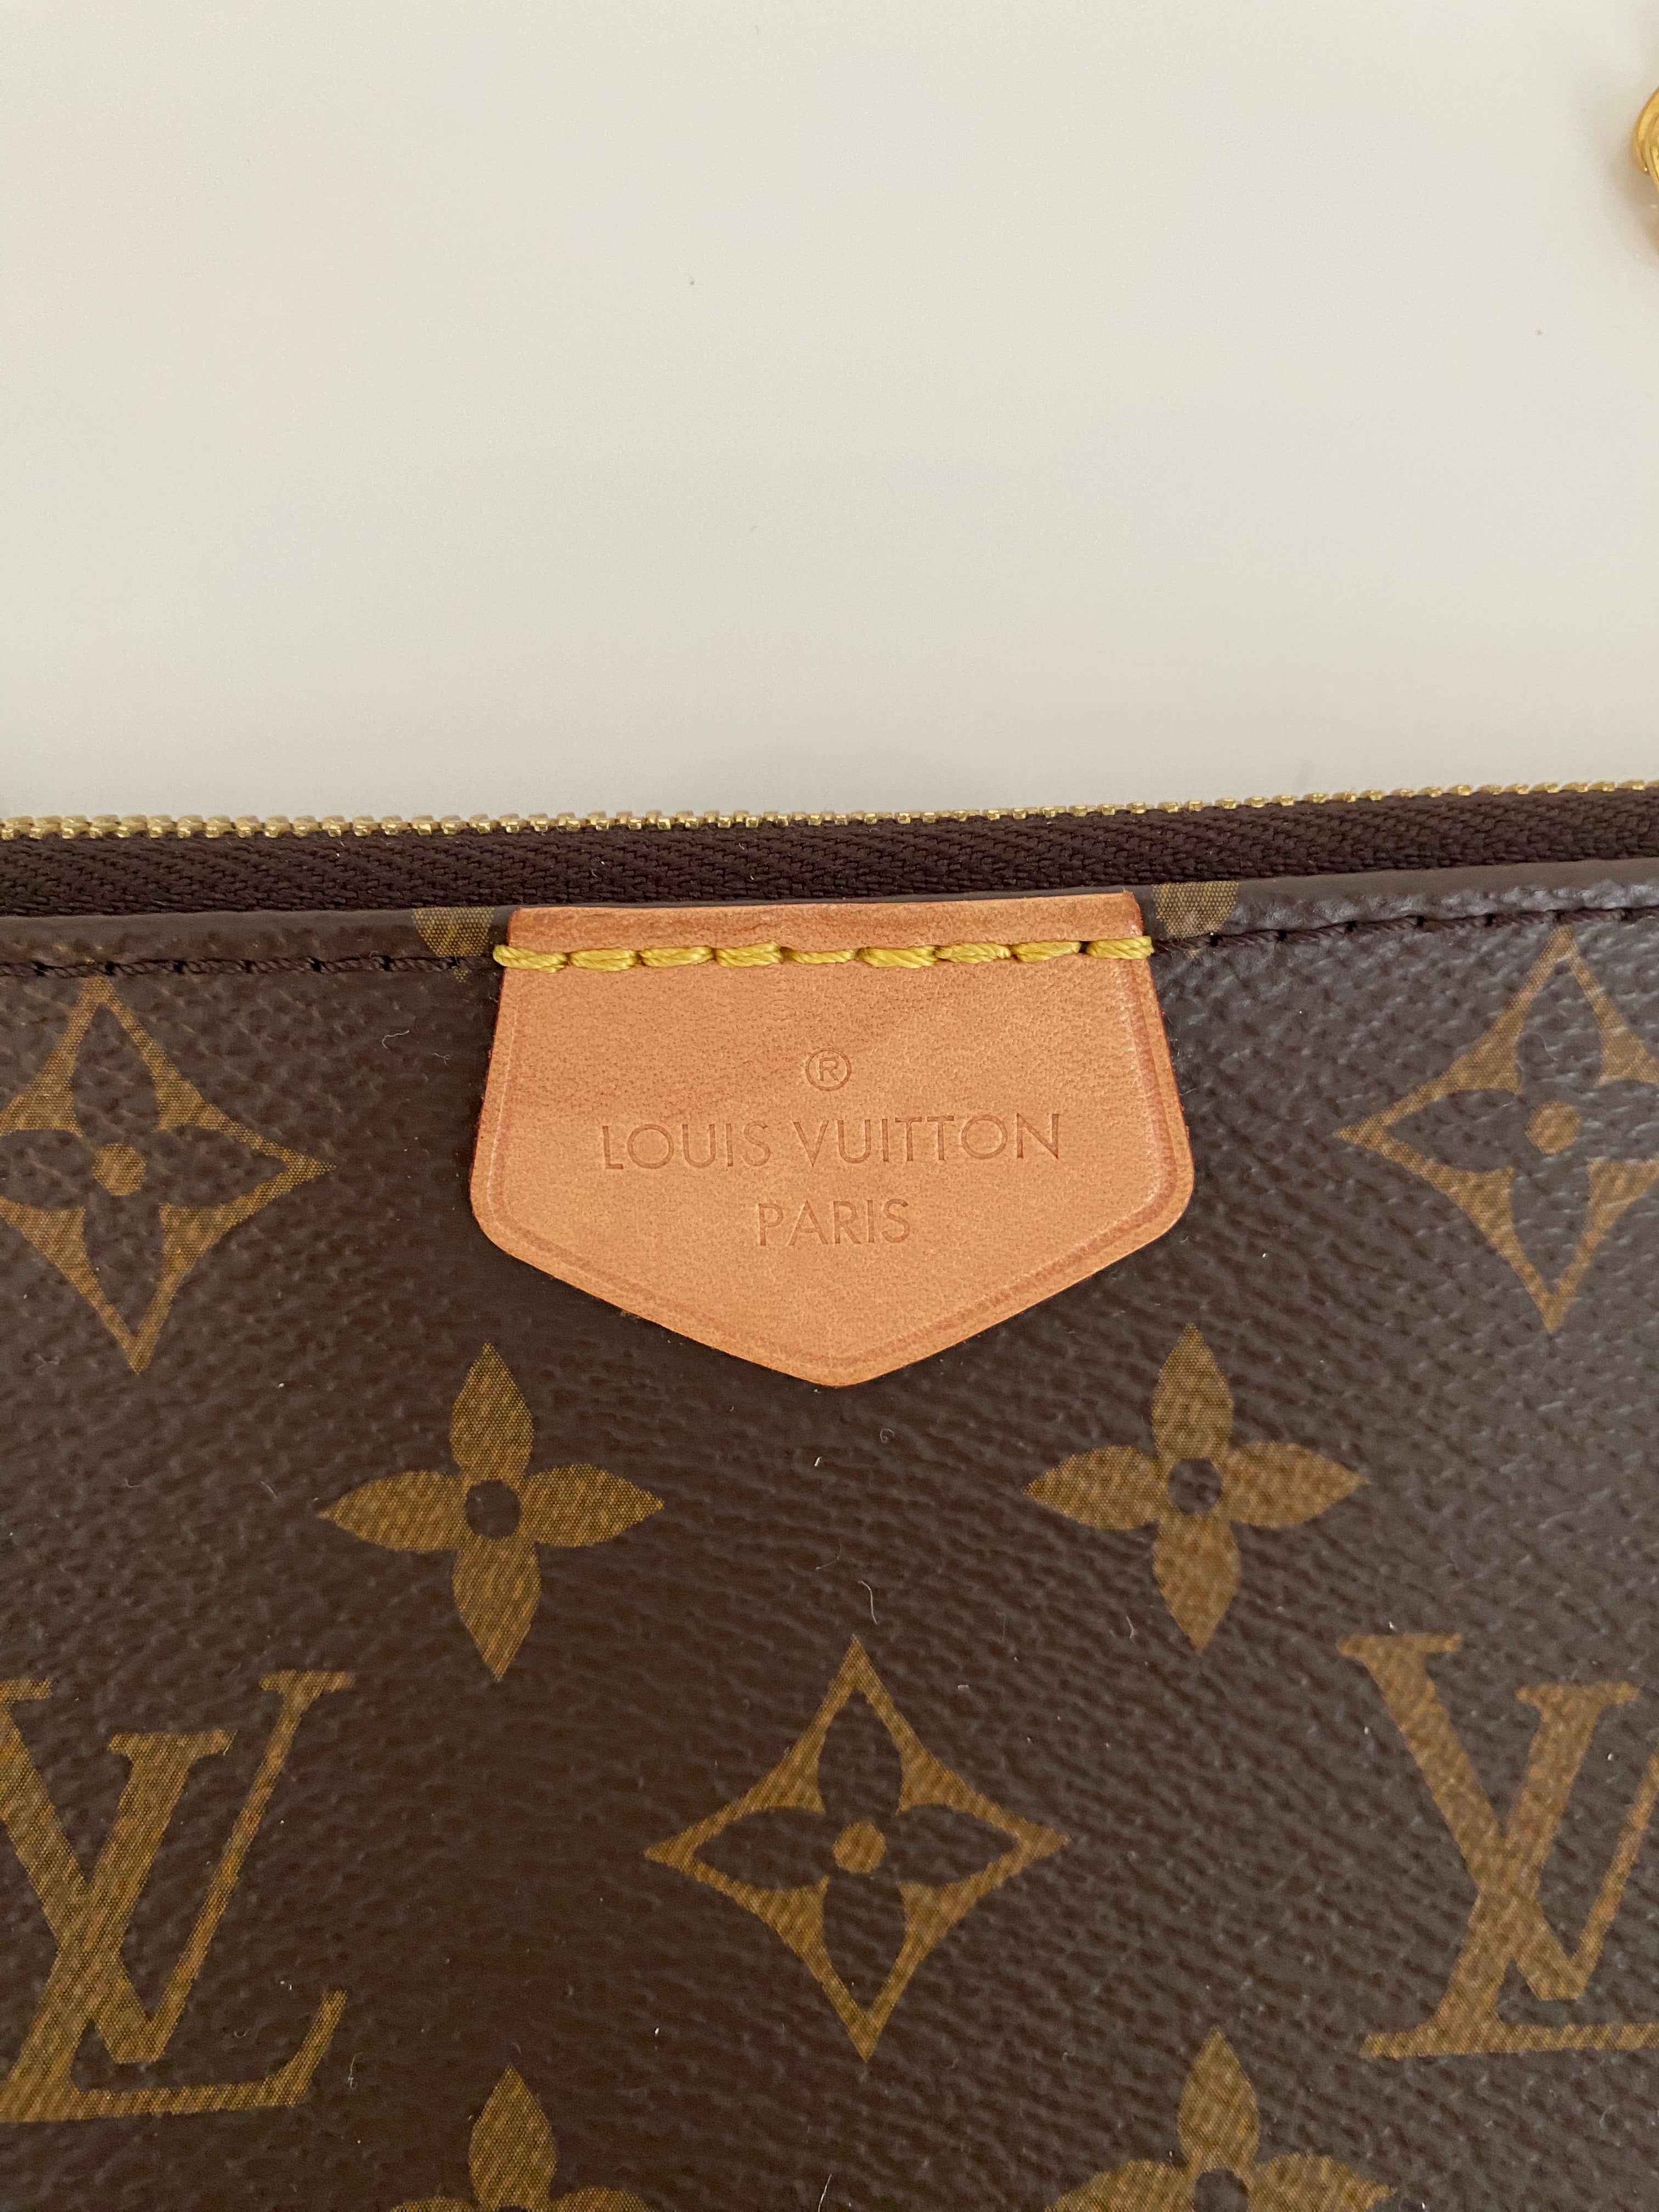 Louis Vuitton - Authenticated Multi Pochette Accessoires Handbag - Cloth Blue for Women, Never Worn